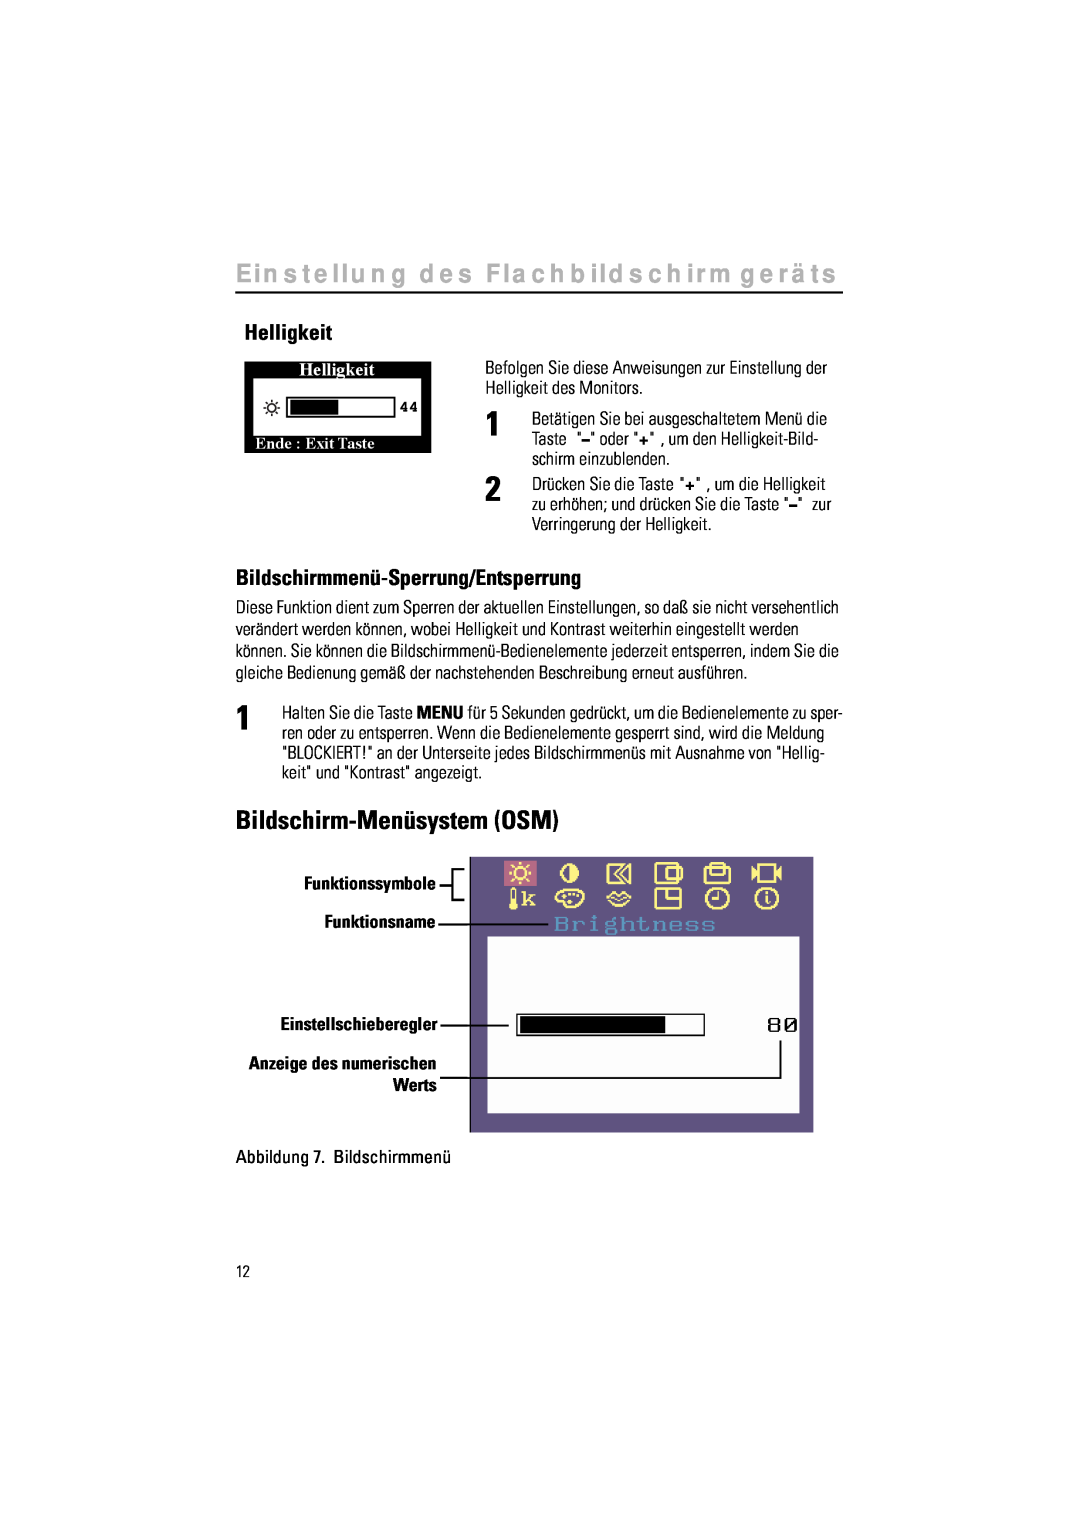 Samsung RN15LSTAN/EDC Bildschirm-Menüsystem OSM, Helligkeit, Bildschirmmenü-Sperrung/Entsperrung, schirm einzublenden 